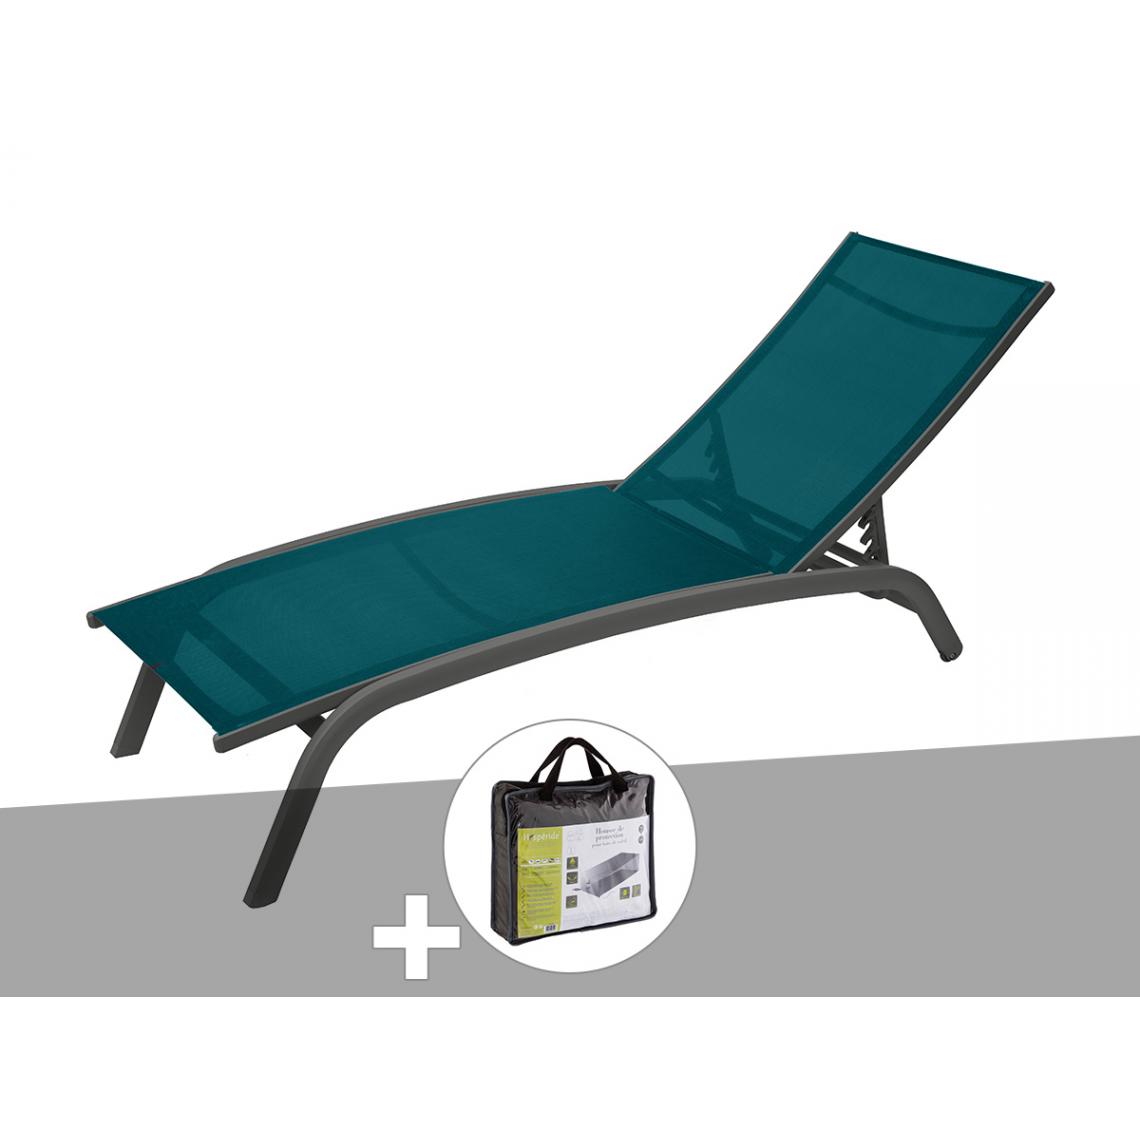 Hesperide - Transat en texaline Bonao Canard/Graphite avec housse de protection - Hespéride - Transats, chaises longues